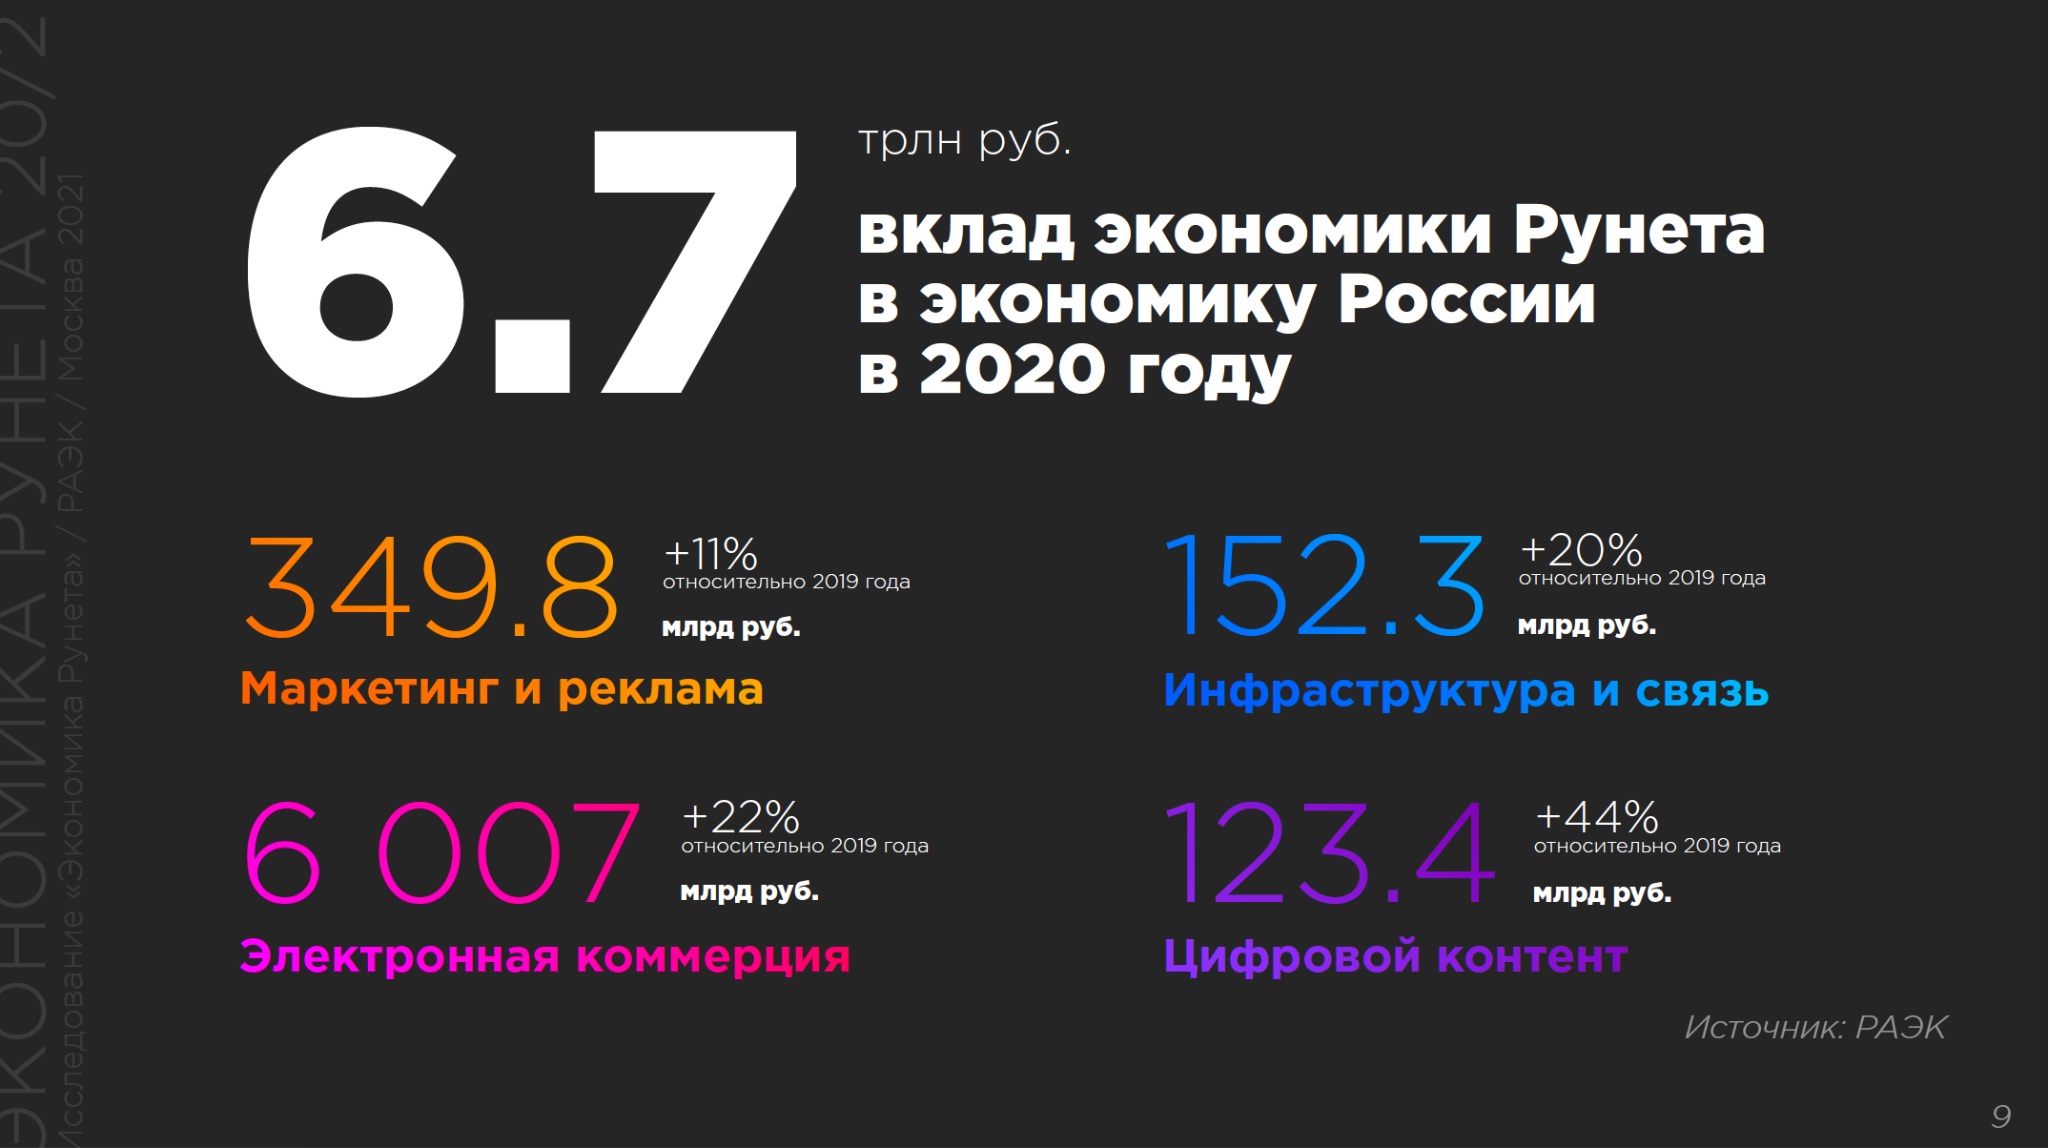 Дней в году 2020 2021. Экономика рунета 2020. Вклад в экономику России. Вклад рунета в экономику России по годам. Ассоциация электронных коммуникаций (РАЭК).